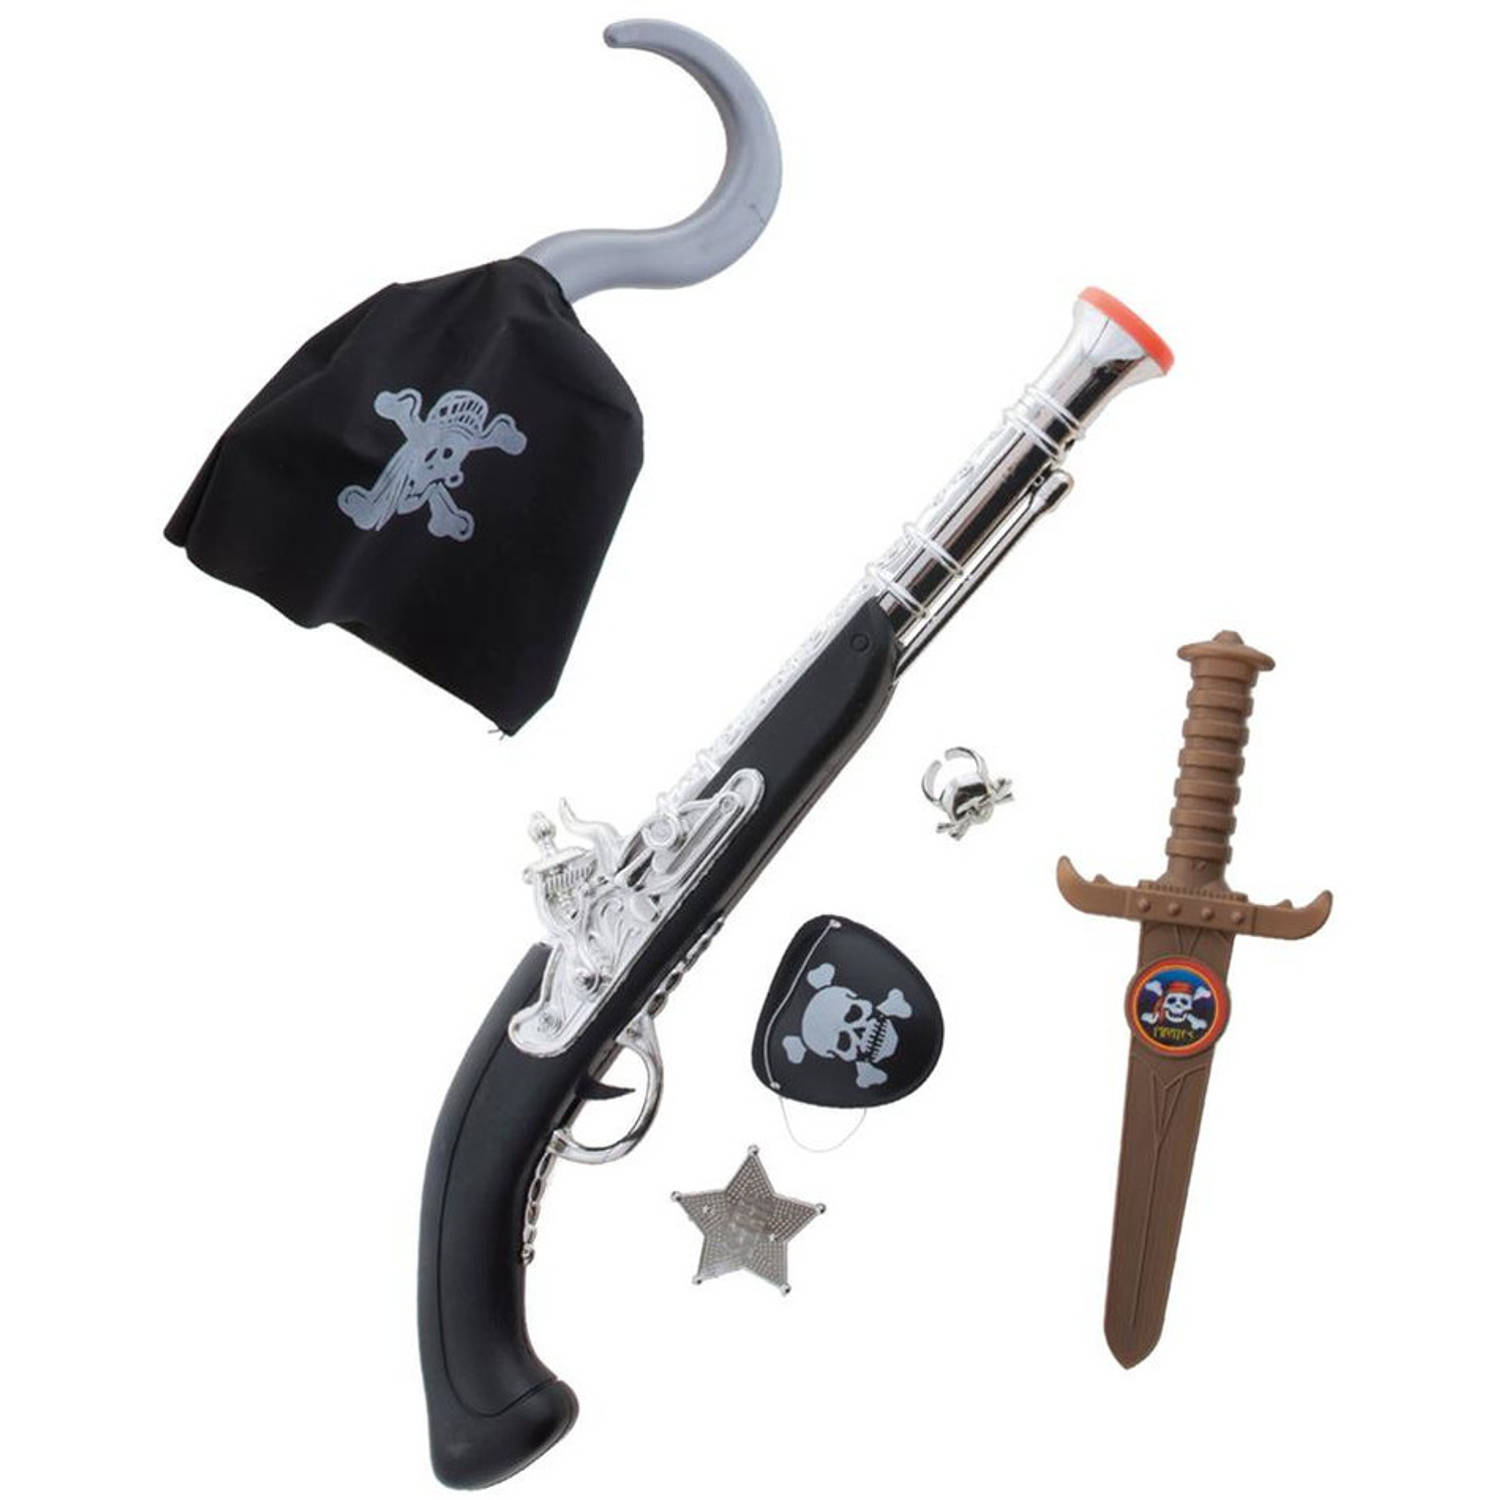 Kinderen speelgoed verkleed wapens set in Piraten stijl thema 6-delig Verkleedattributen